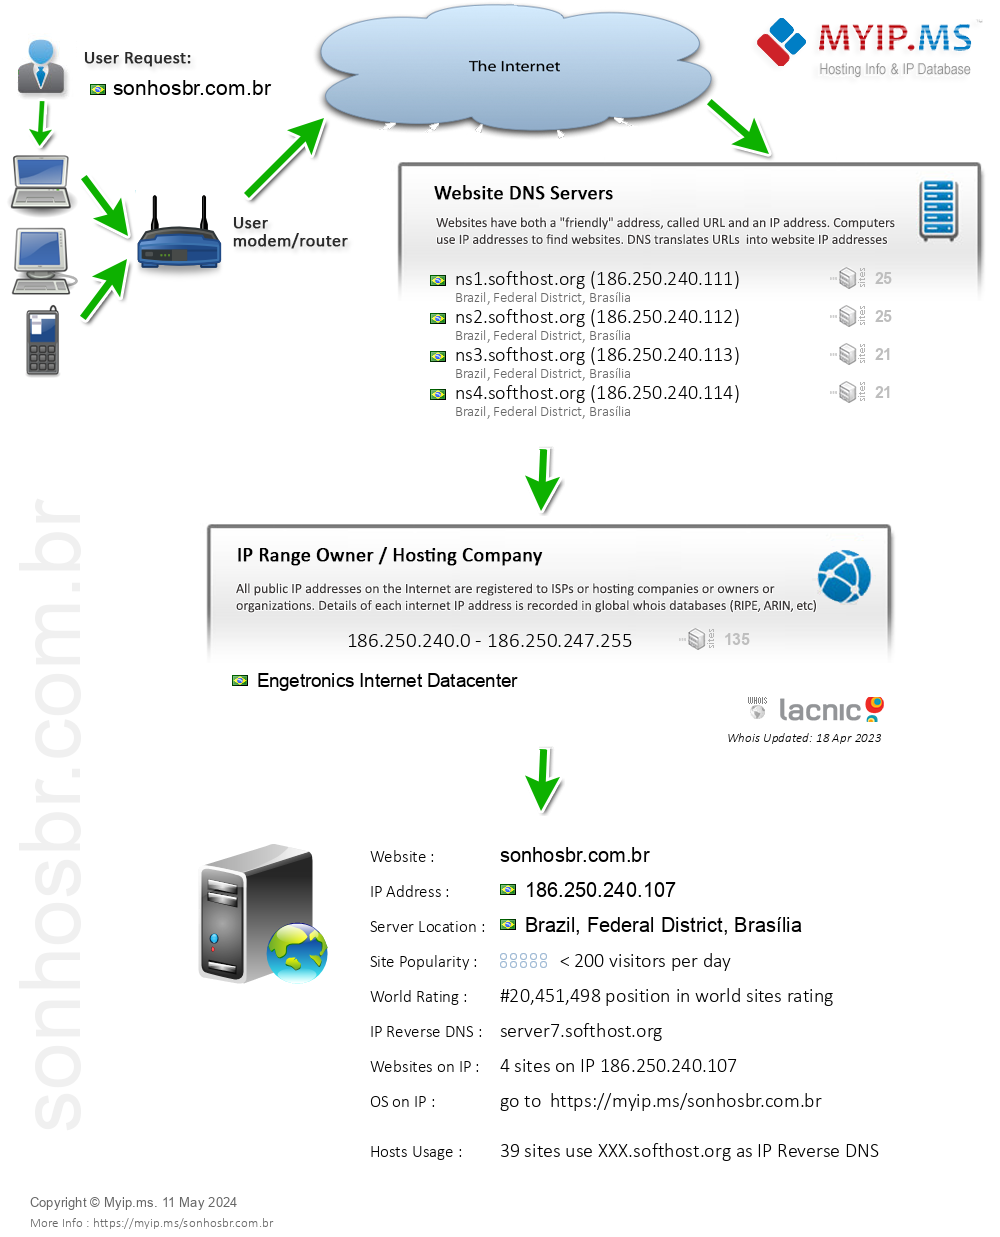 Sonhosbr.com.br - Website Hosting Visual IP Diagram